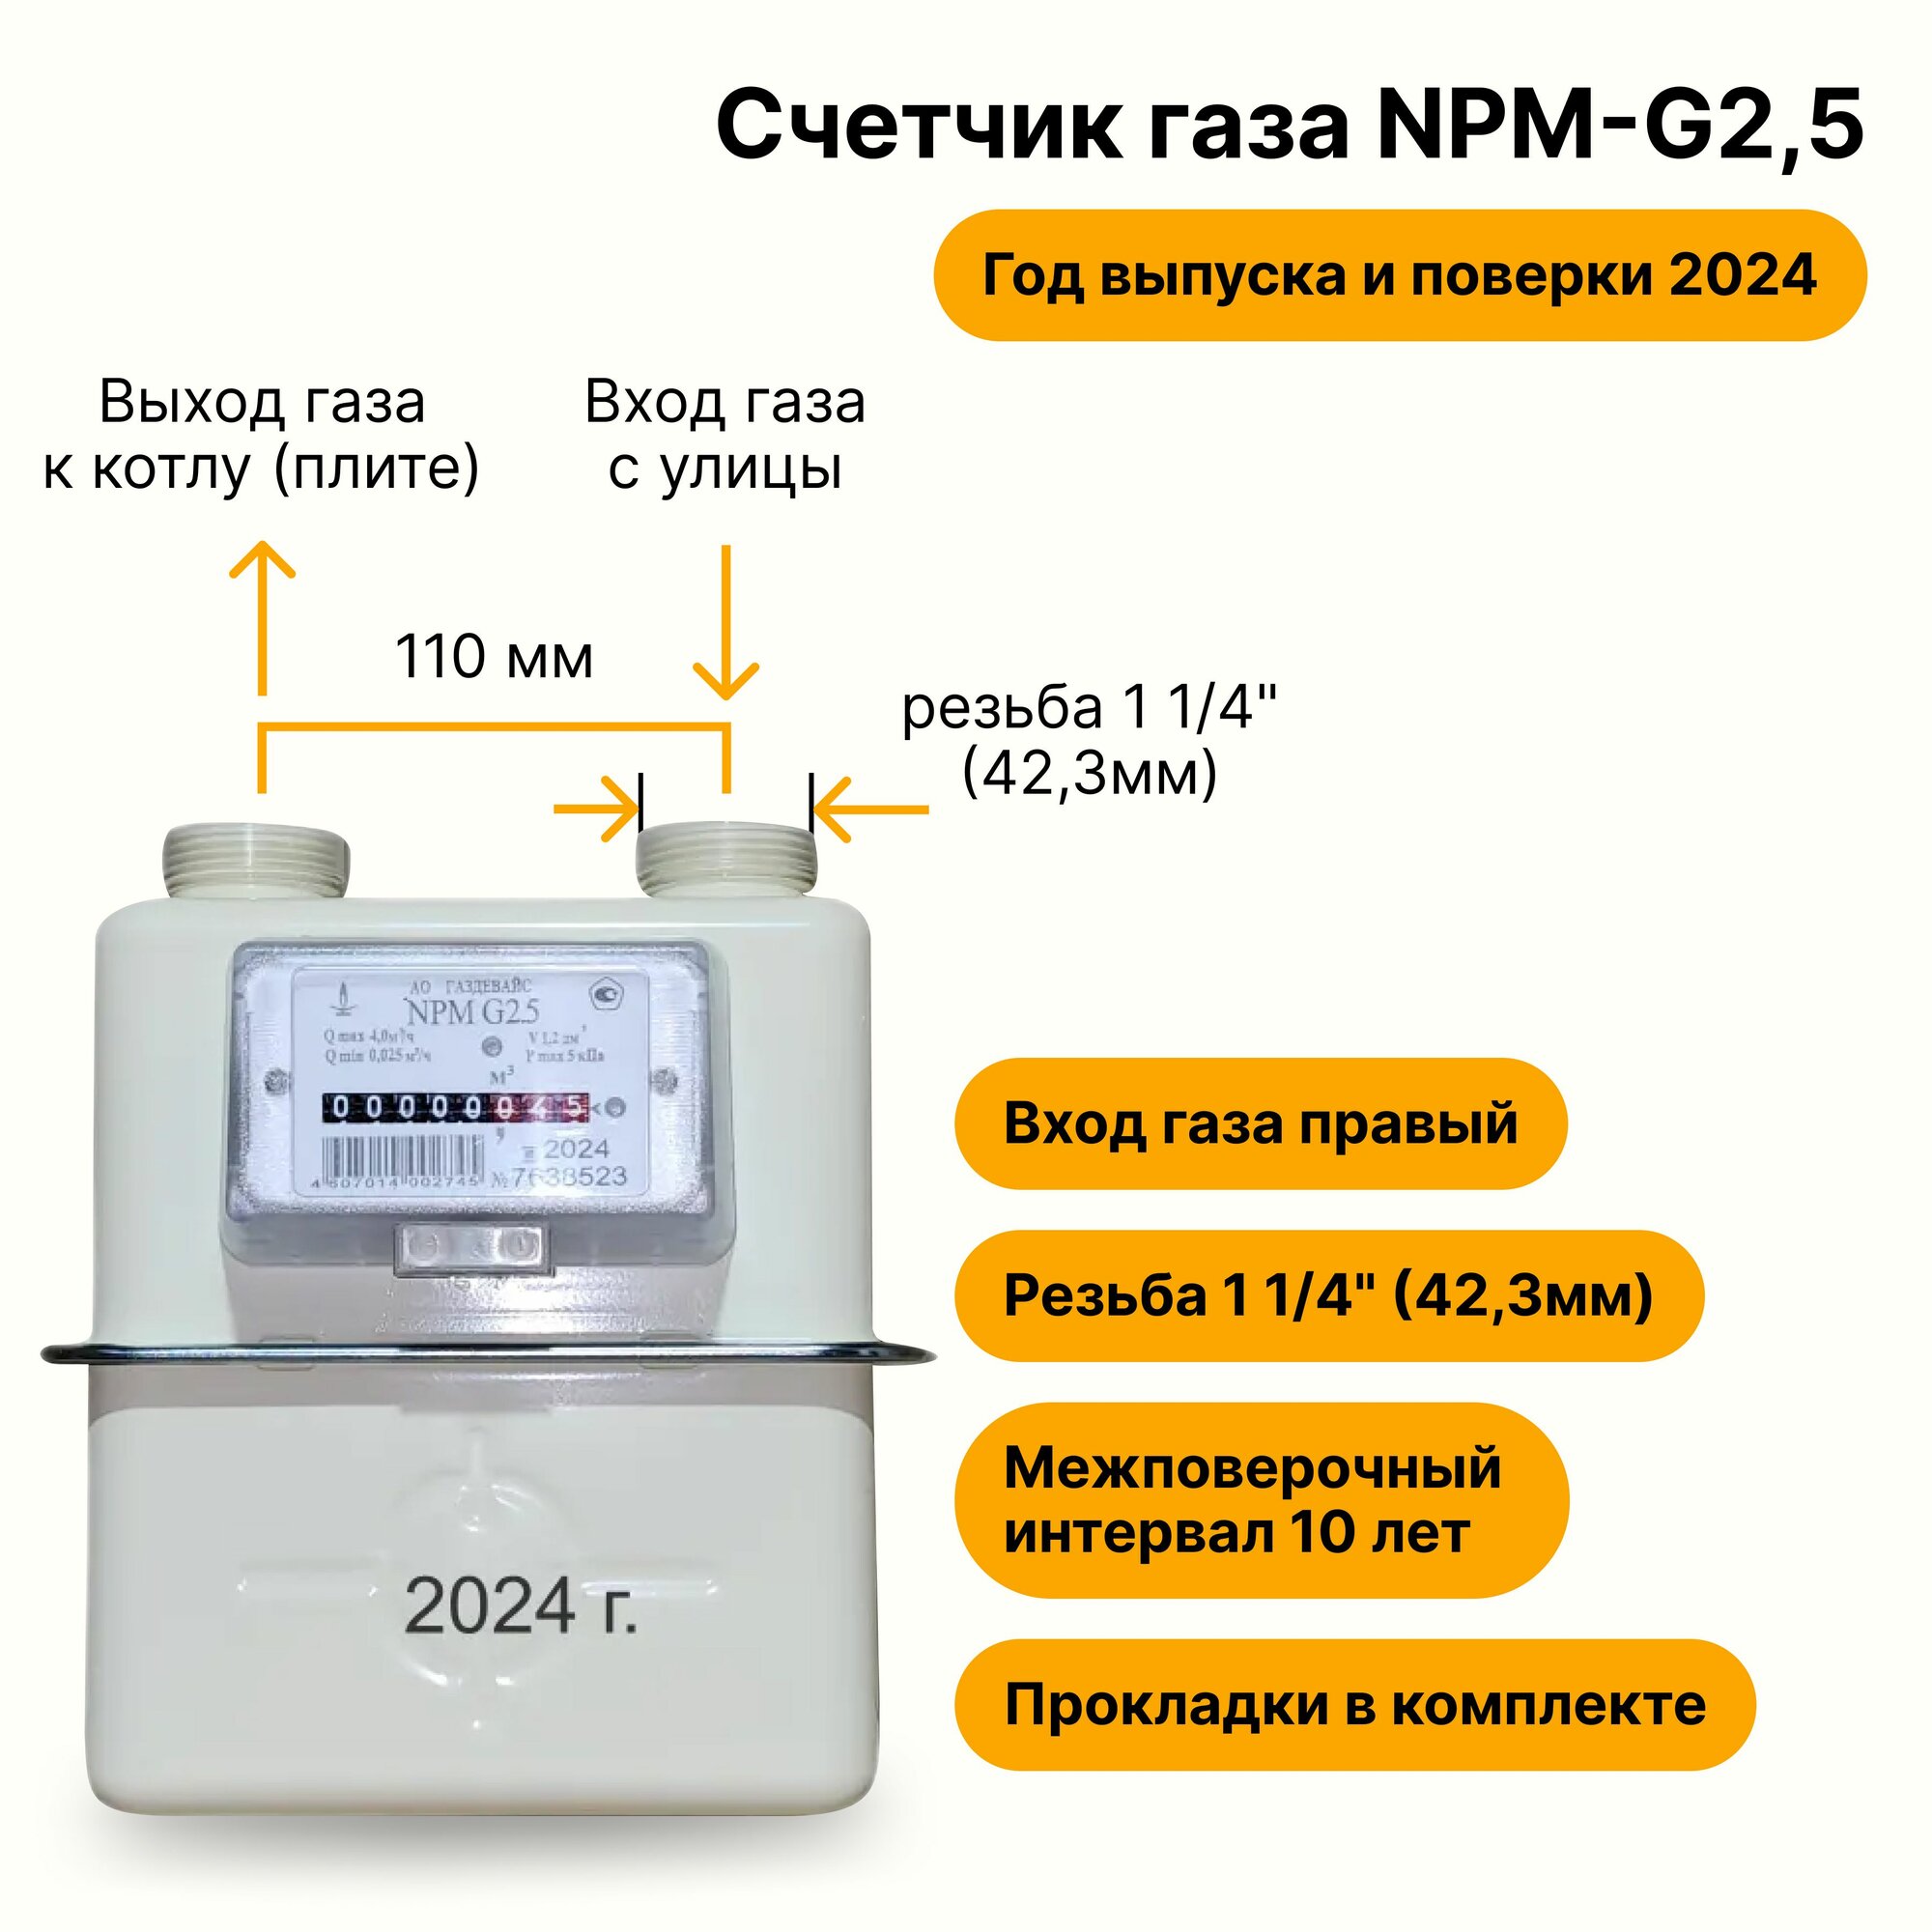 NPM-G2,5 (вход газа правый, резьба 1 1/4", прокладки В комплекте) 2024 года выпуска и поверки